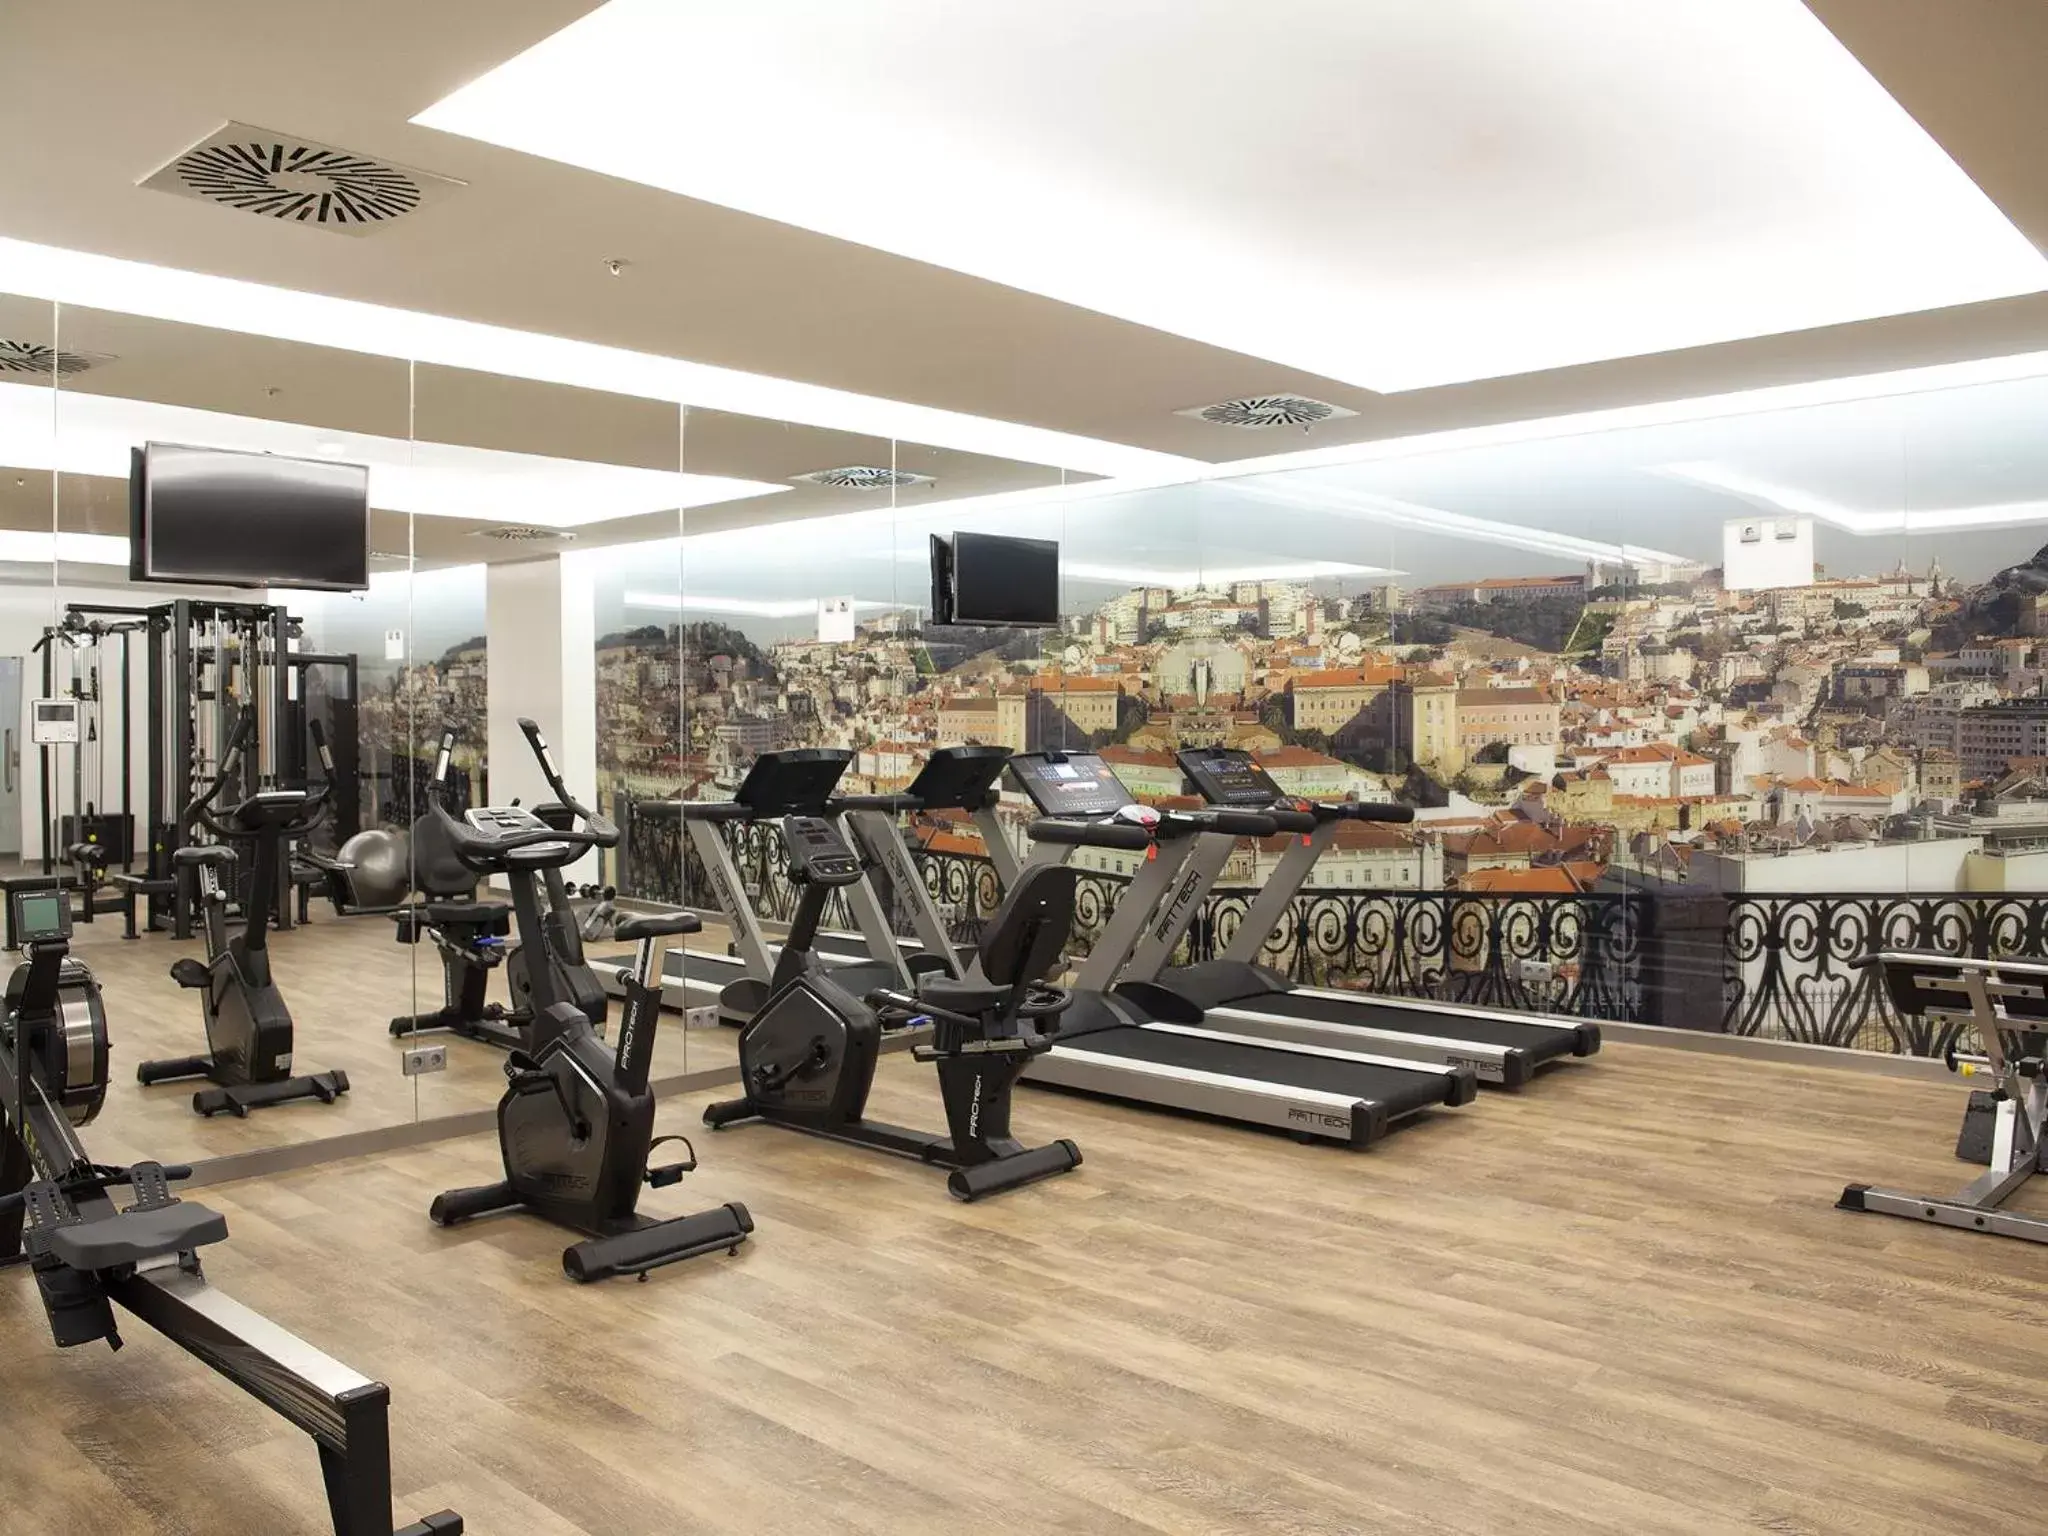 Fitness centre/facilities, Fitness Center/Facilities in Jupiter Lisboa Hotel